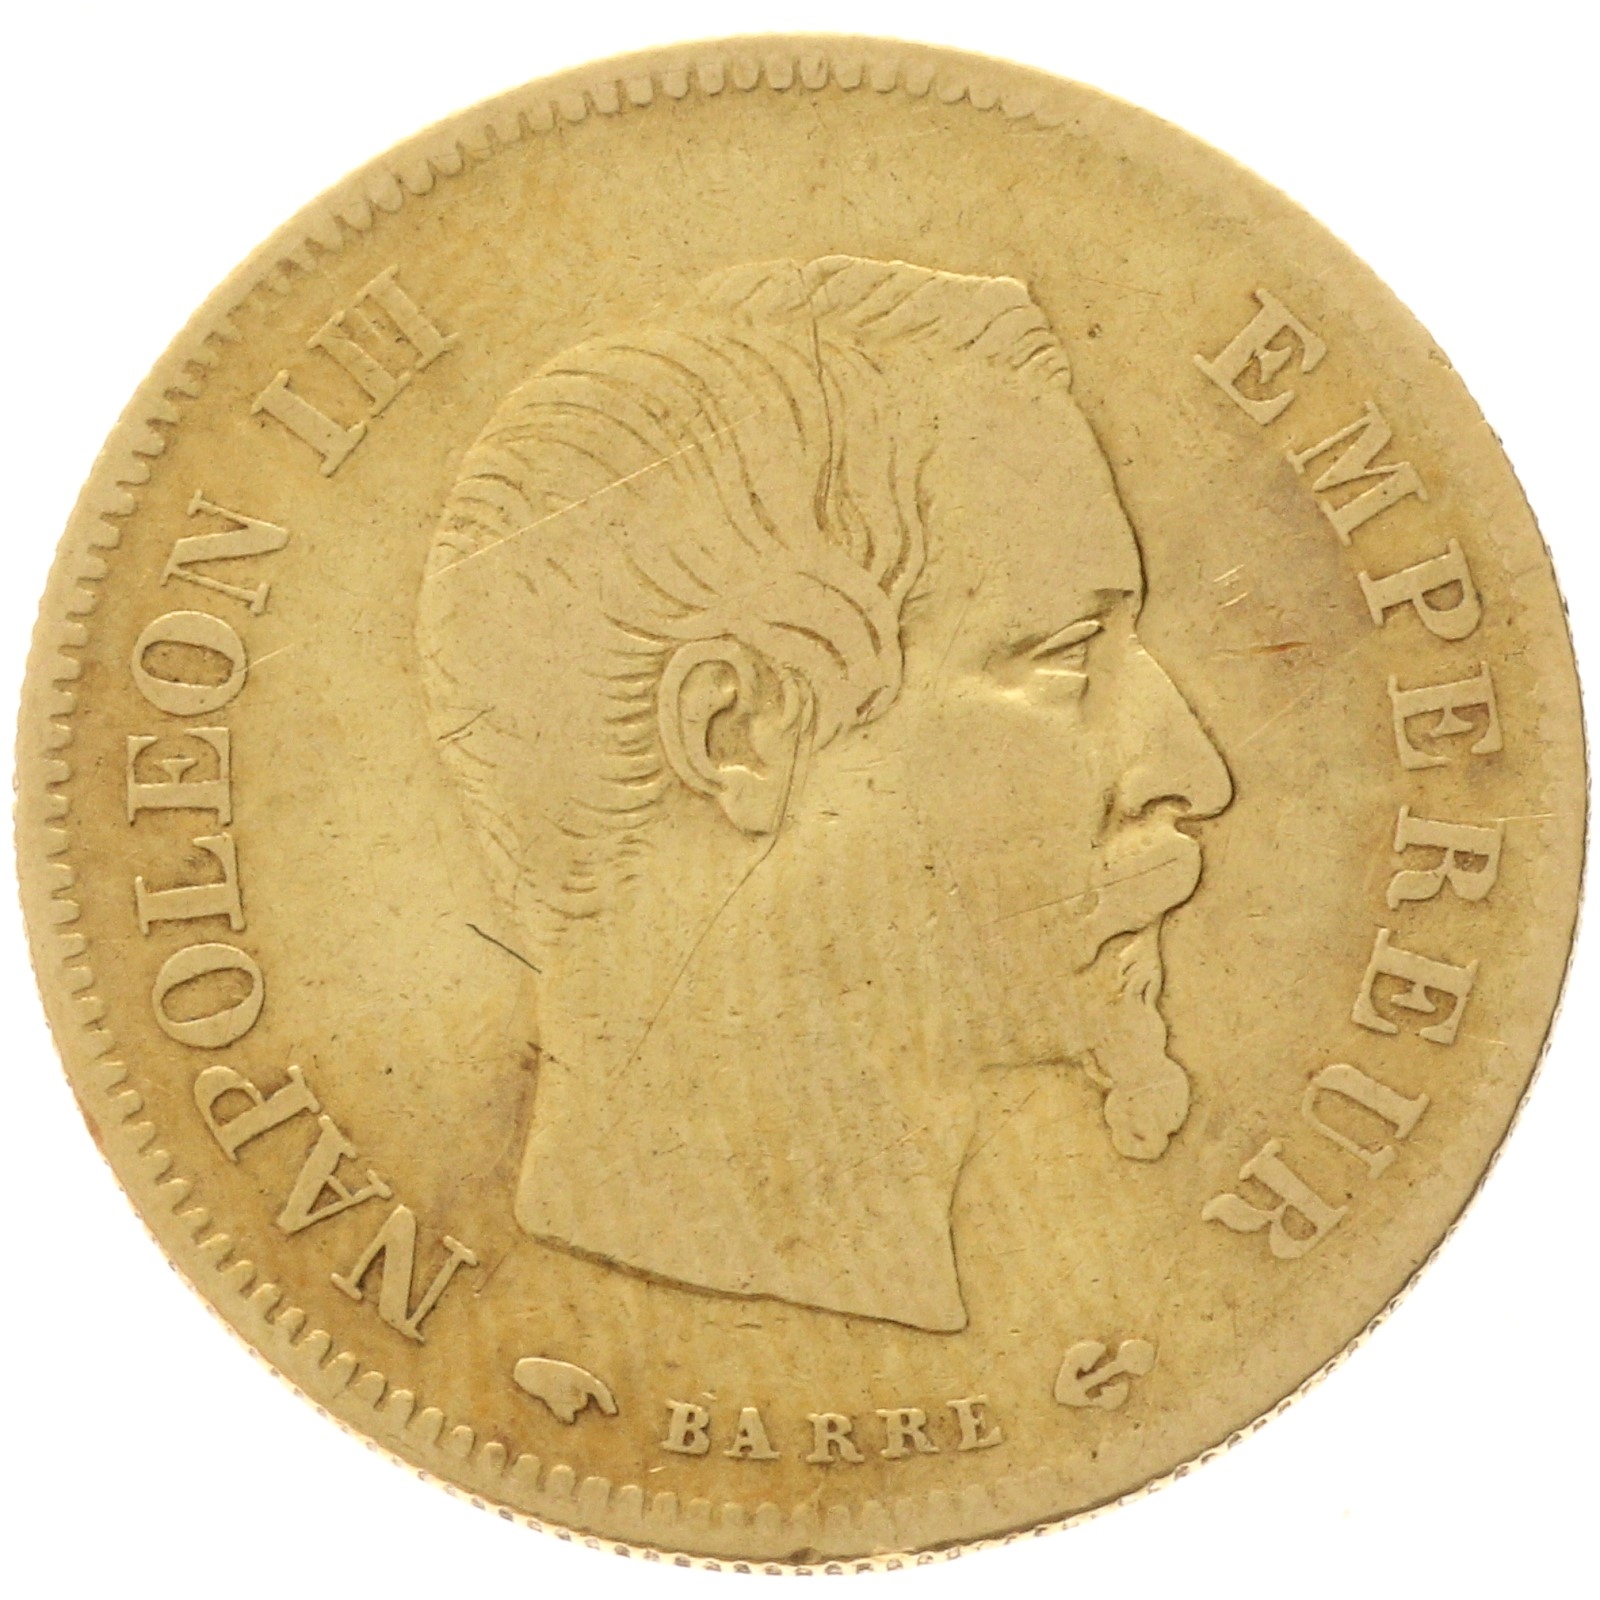 France - 10 francs - 1856 - A - Napoleon III 